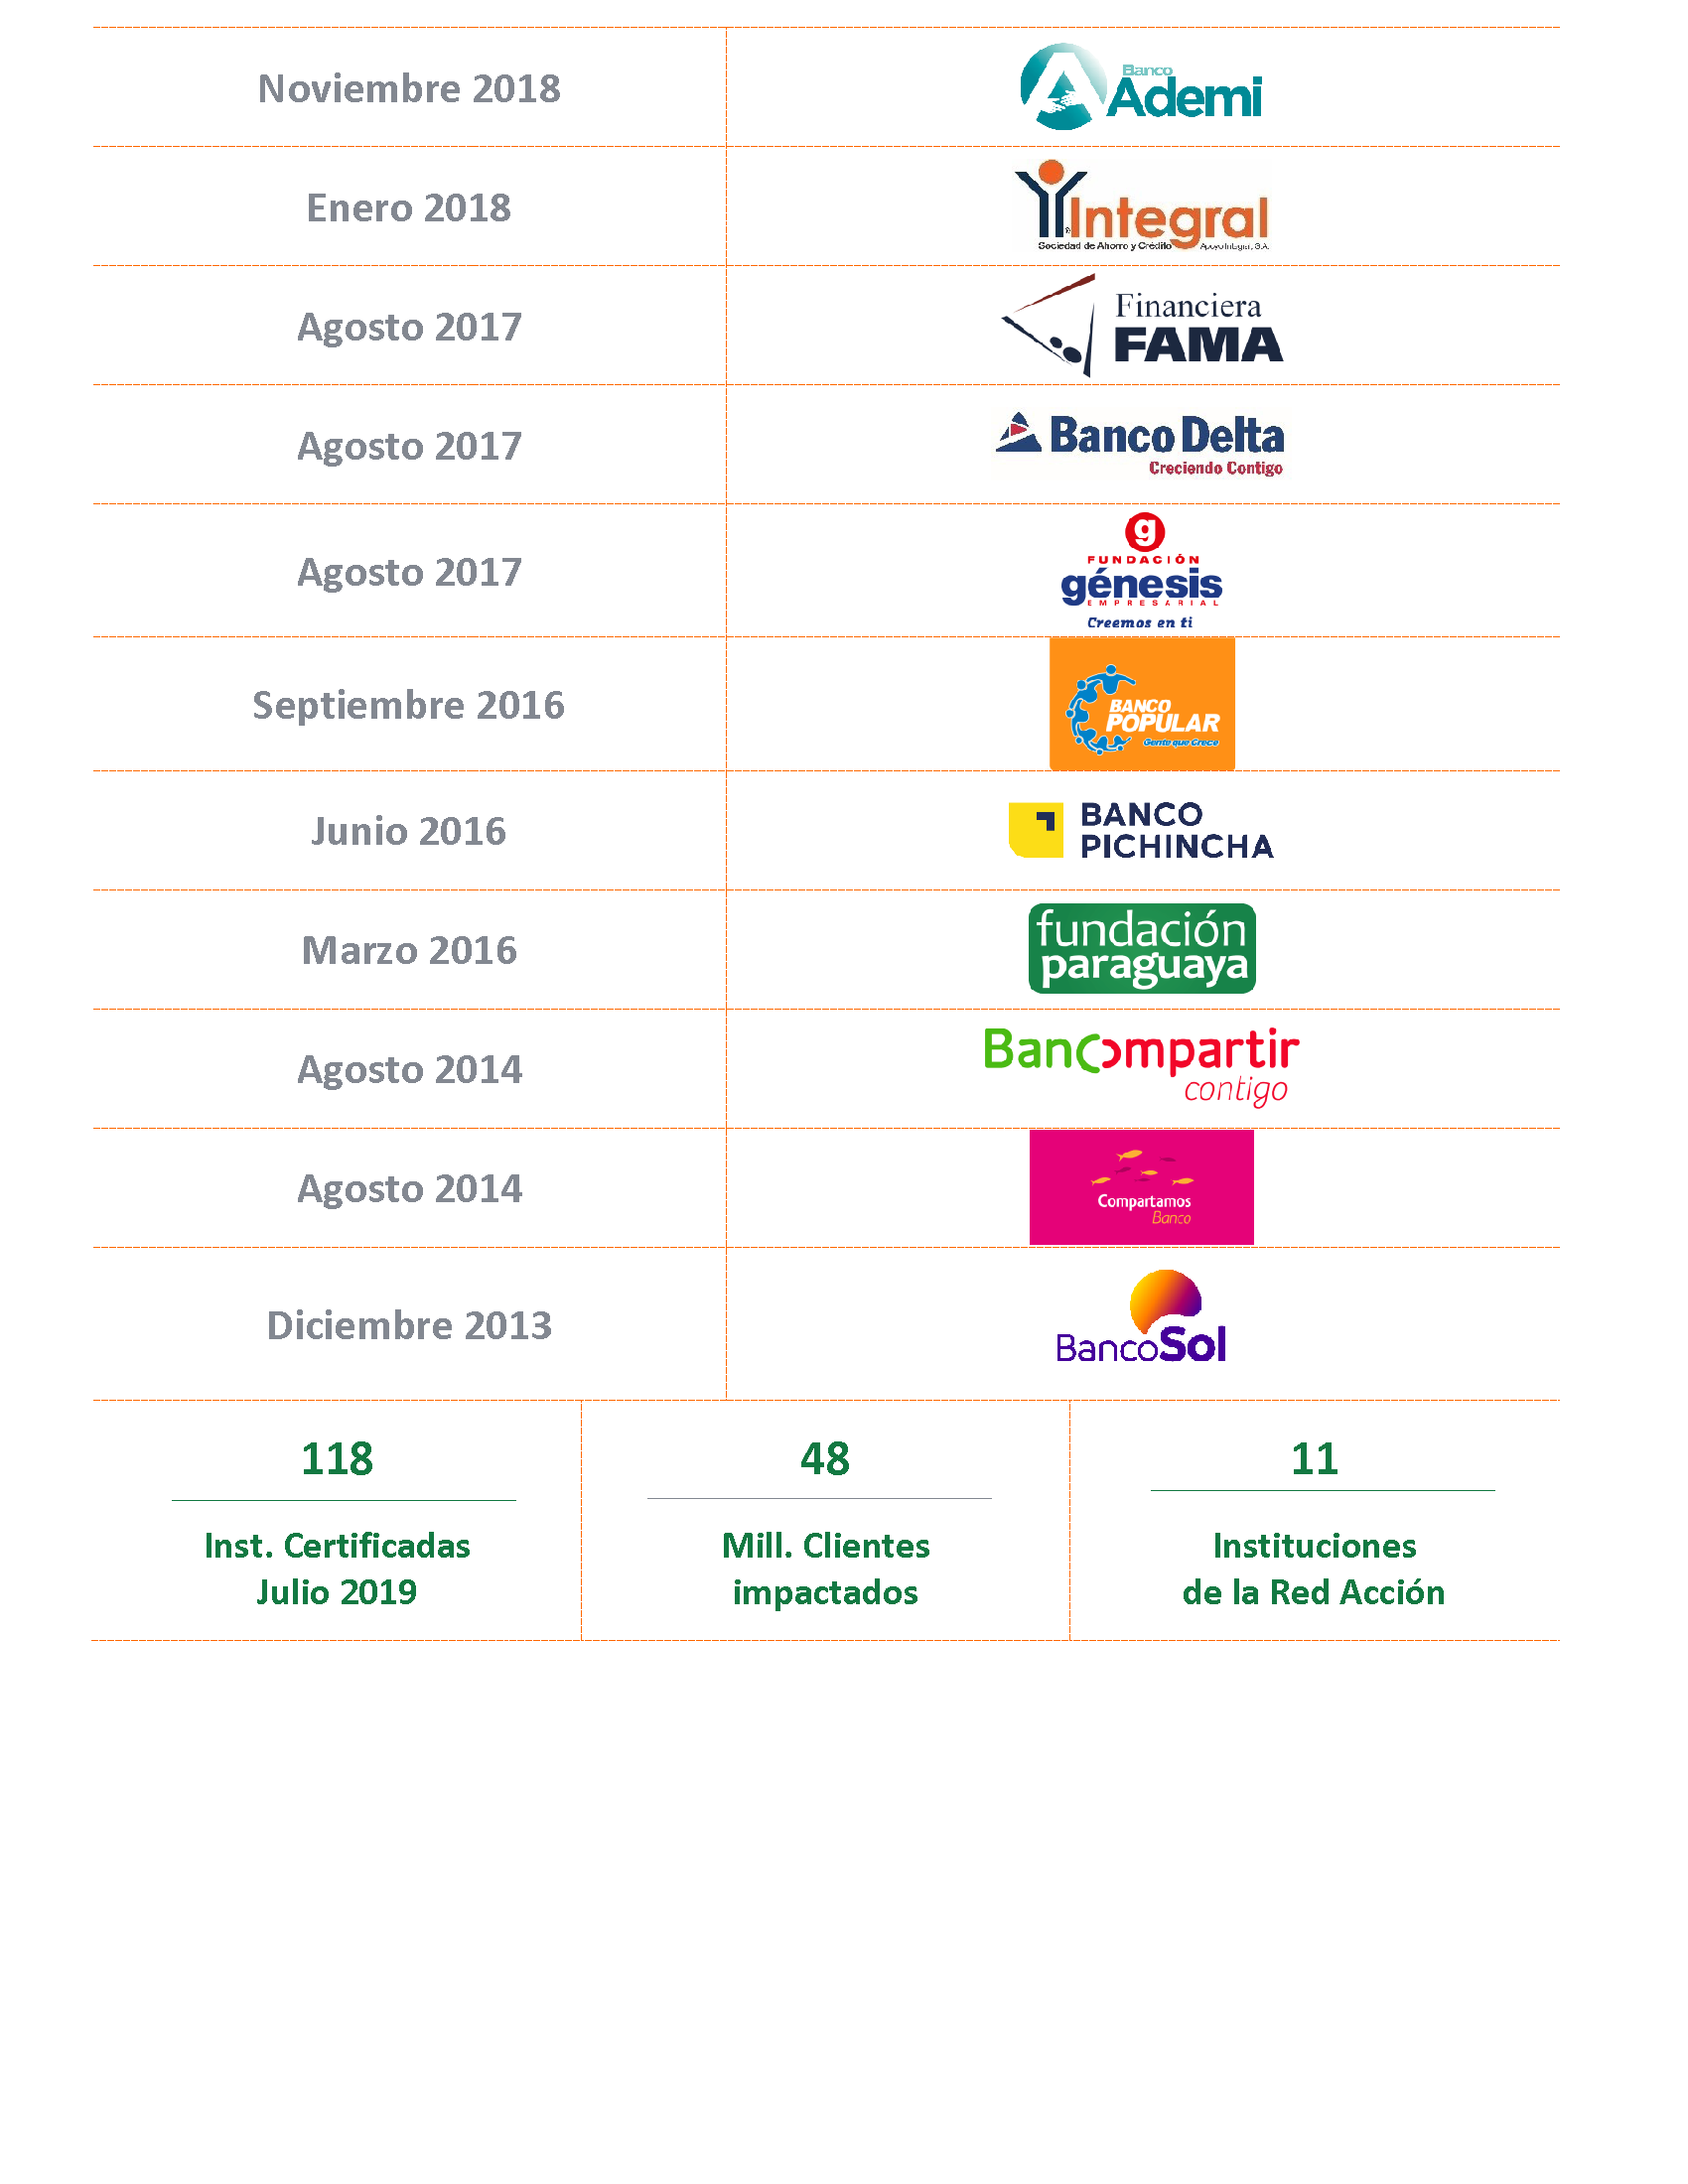 ORGANIZACIONES CERTIFICADAS cambio logo BancoSol